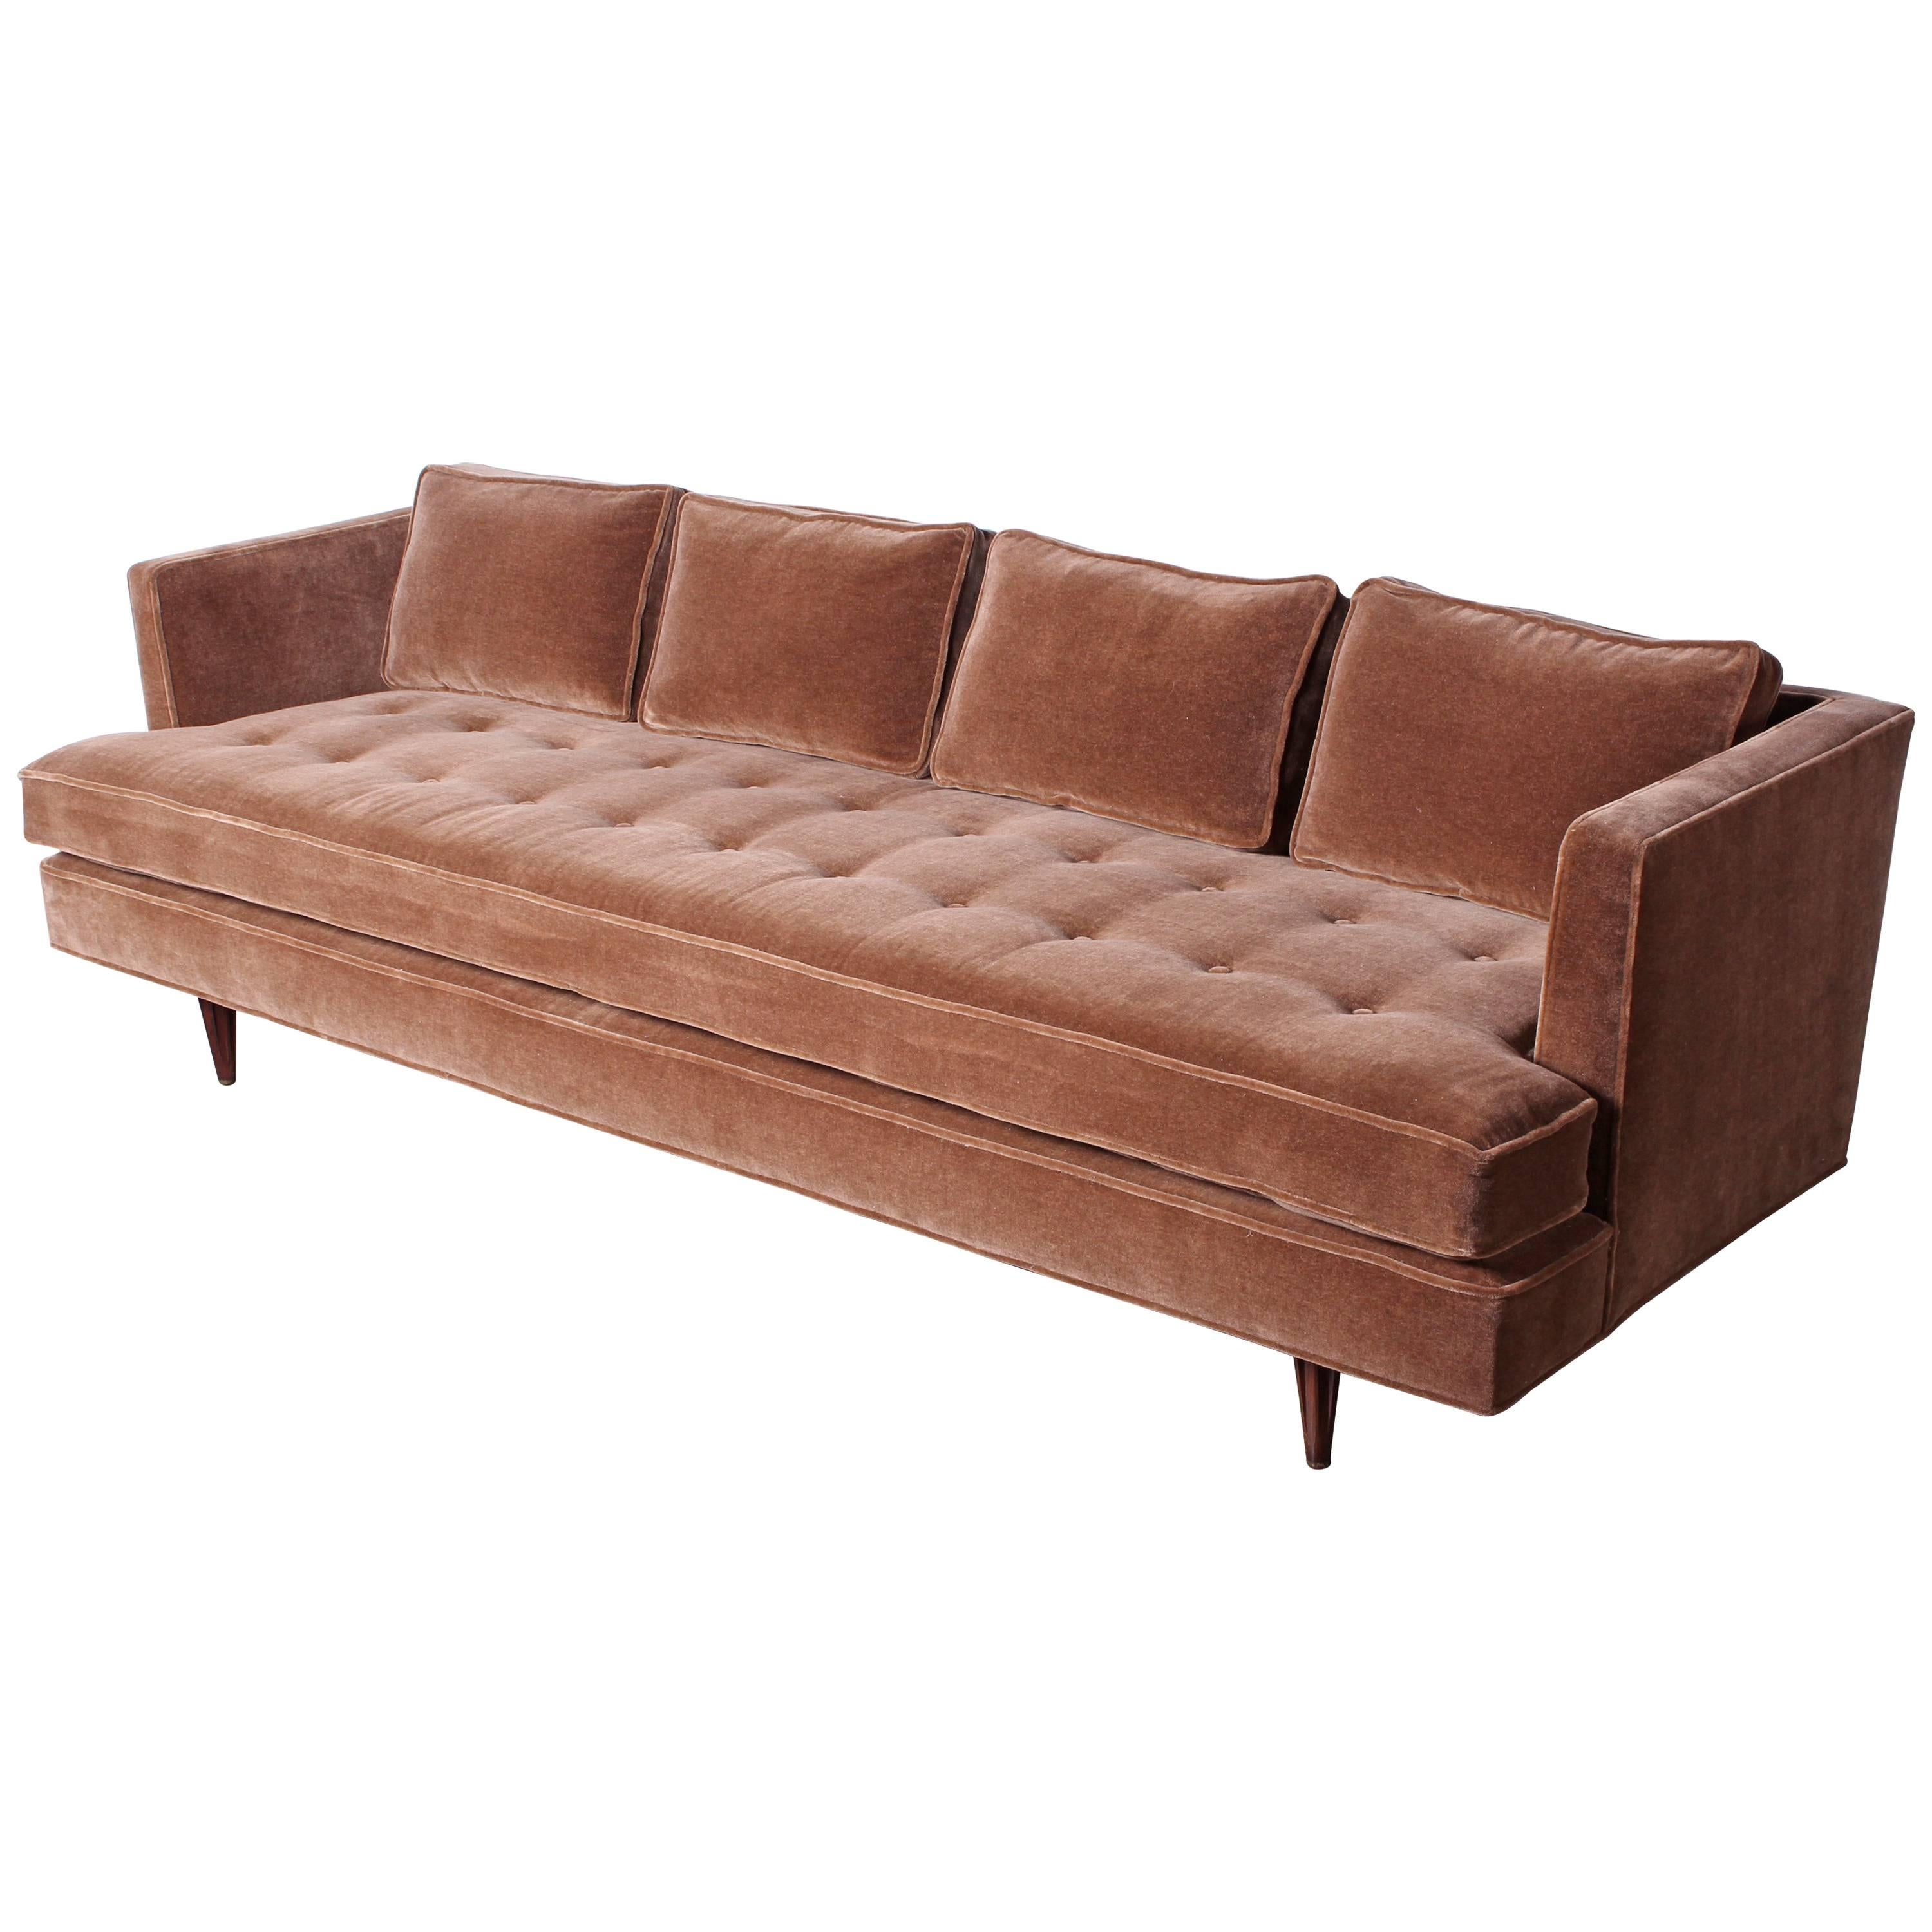 Sofa Designed by Edward Wormley for Dunbar